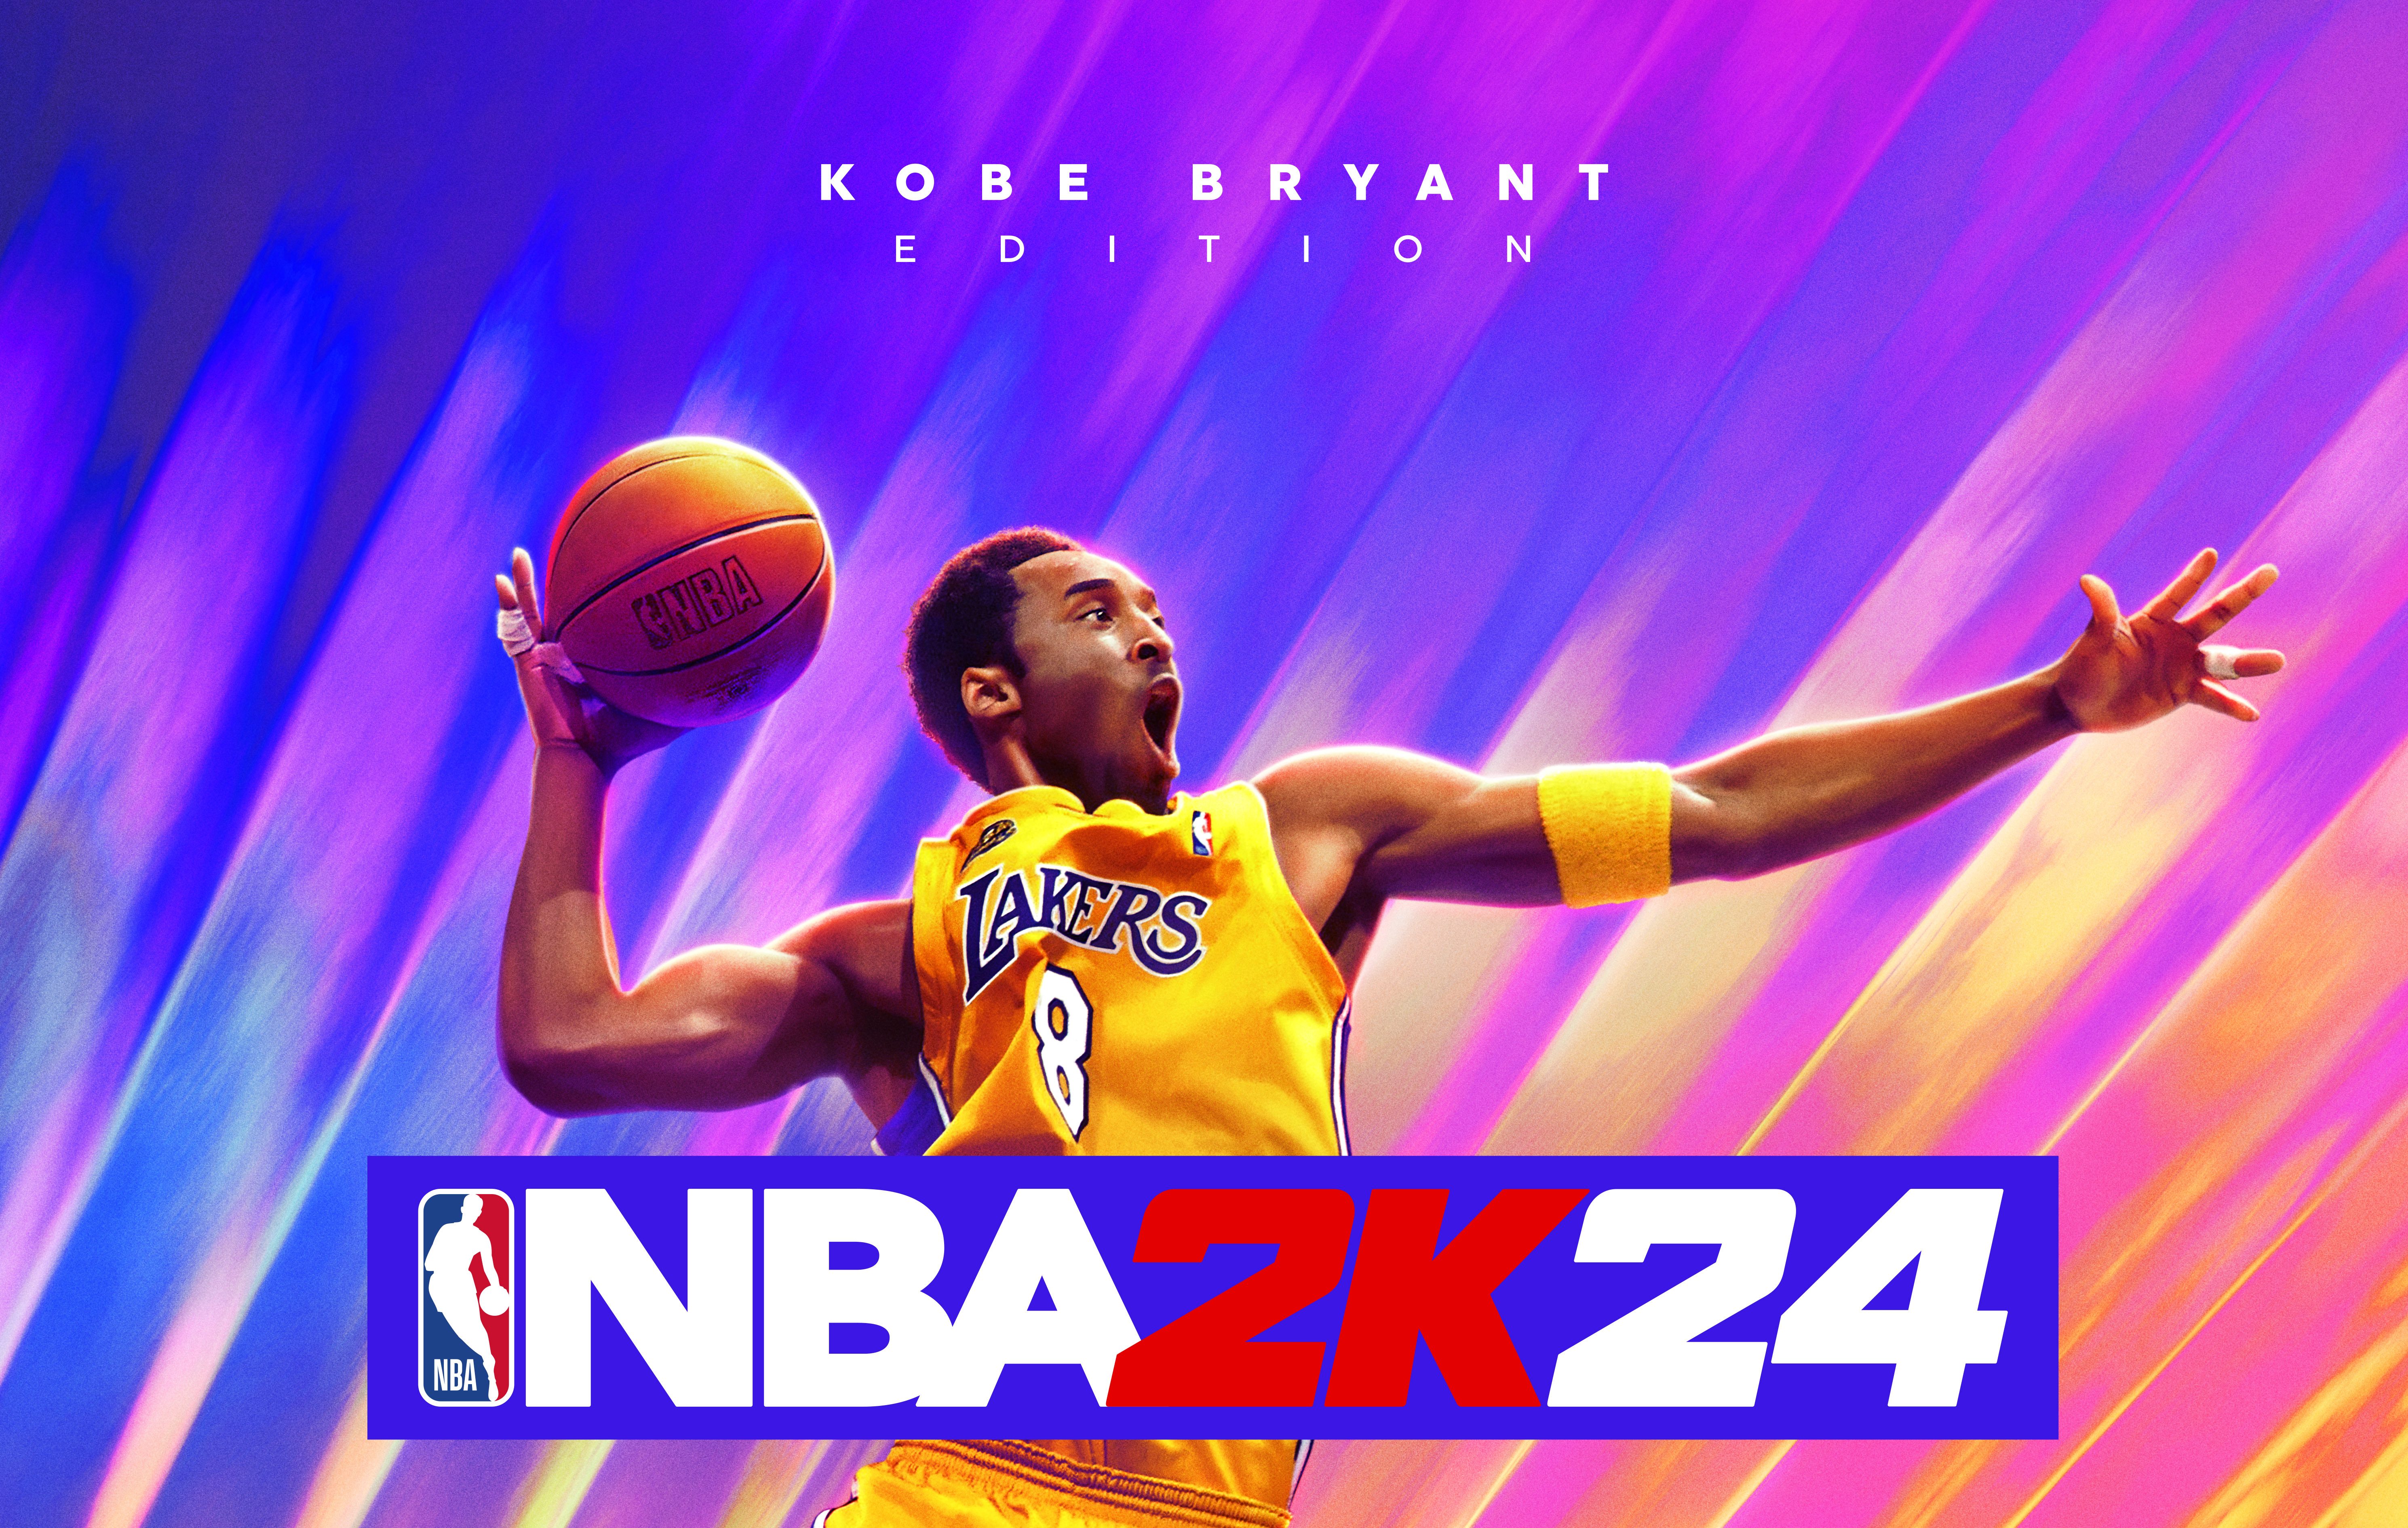 Kobe Bryant Landing The Cover of 'NBA 2K24' Sparks Reactions